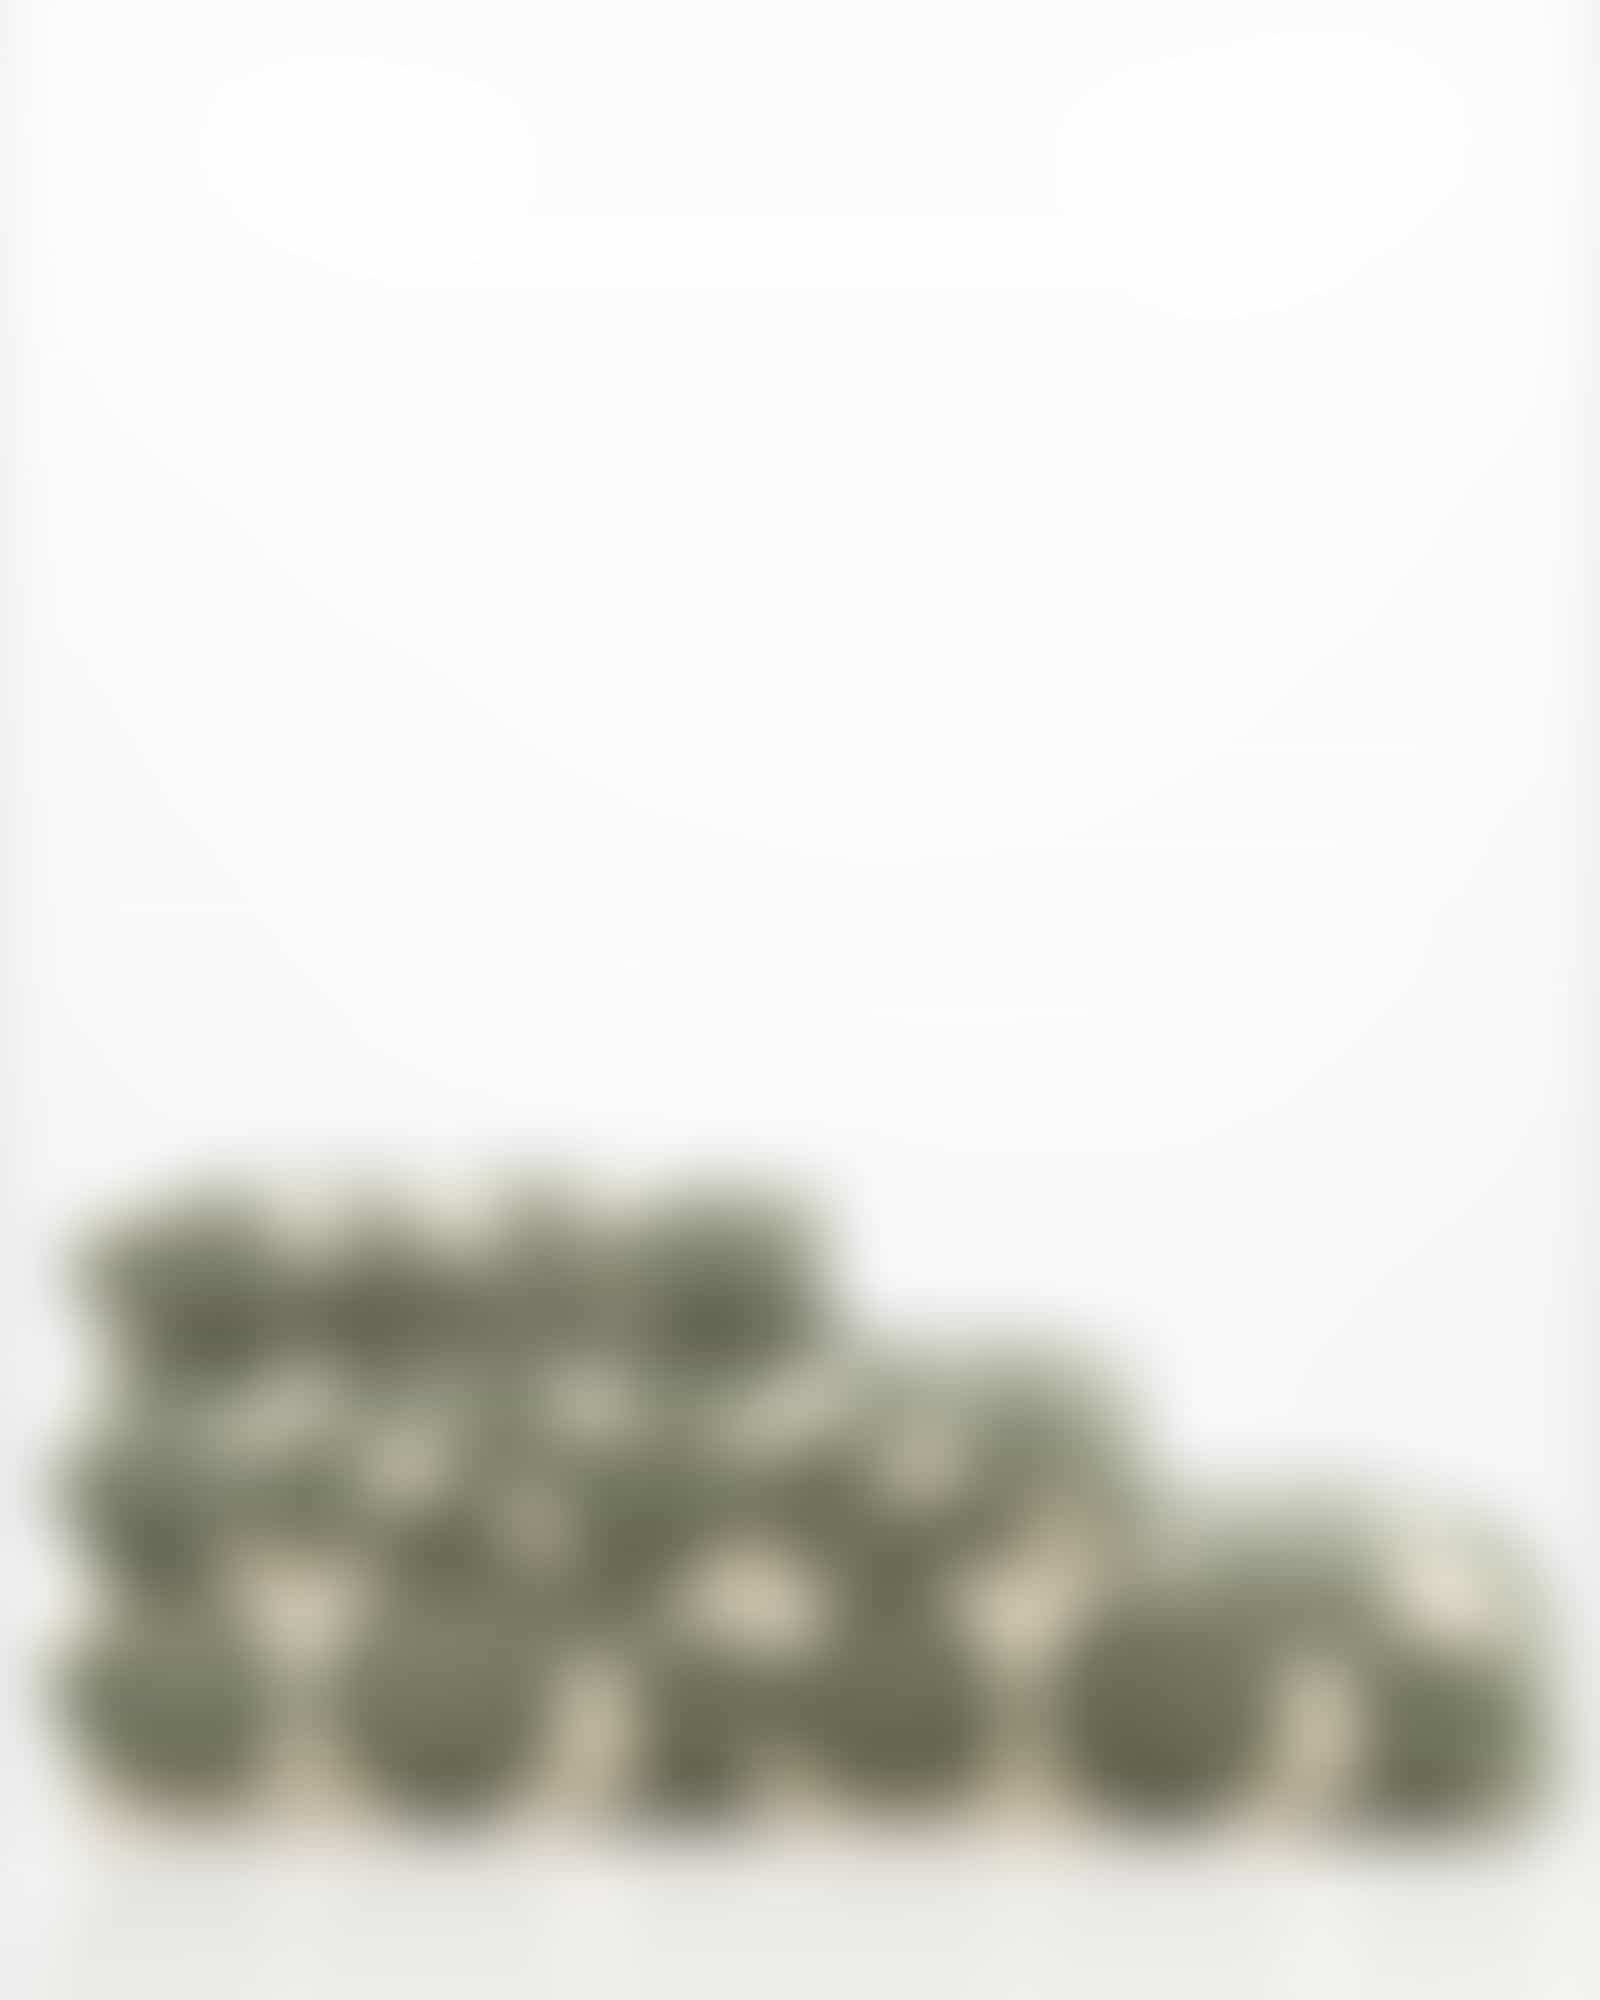 Cawö Handtücher Loft Pebbles 6224 - Farbe: field - 34 - Handtuch 50x100 cm